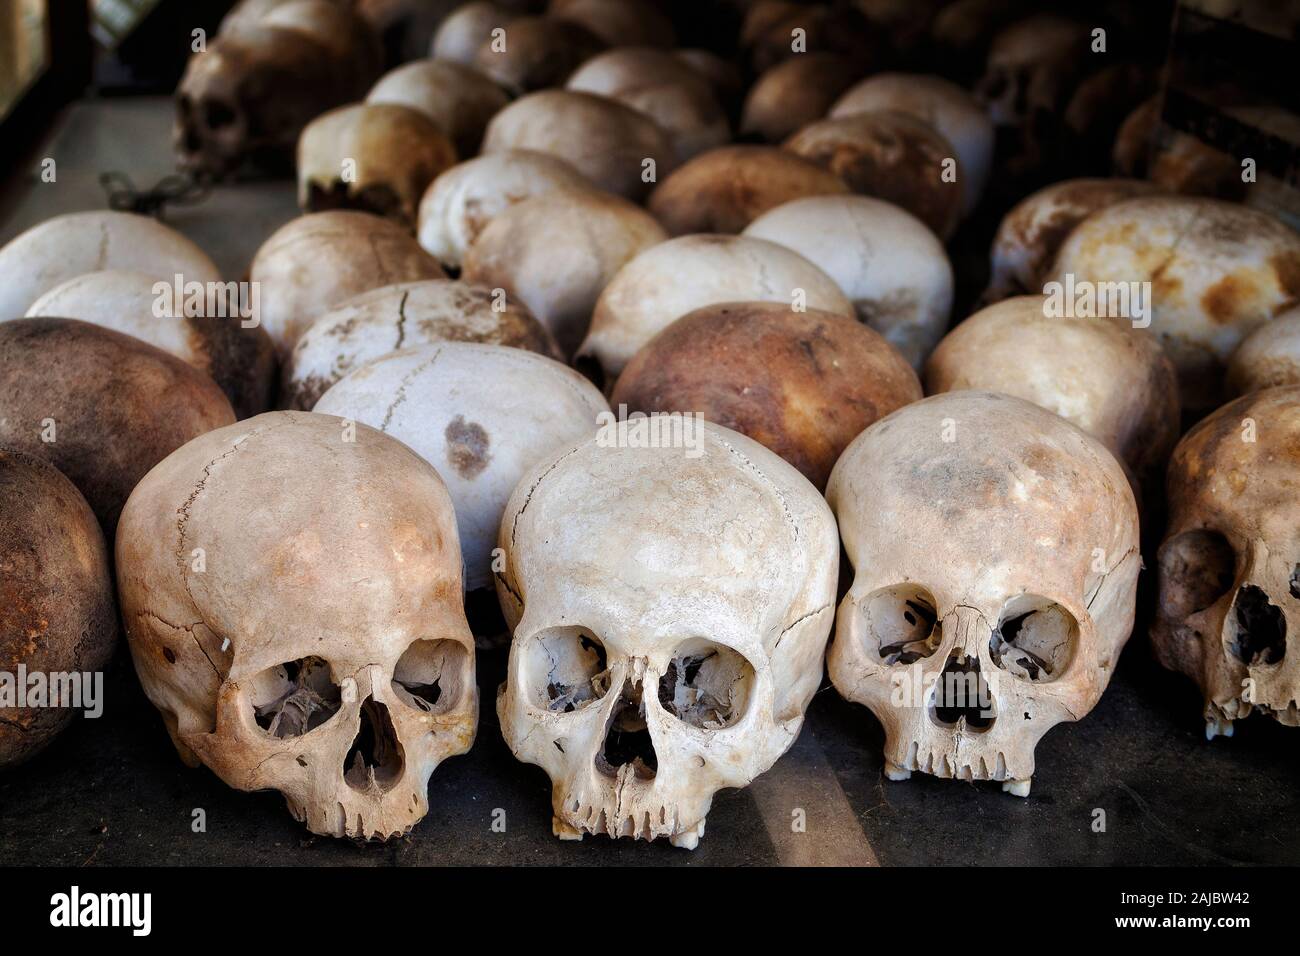 Des crânes humains des victimes des Khmers rouges dans les champs de la Mort de Choeung Ek, Phnom Penh, Cambodge. Banque D'Images